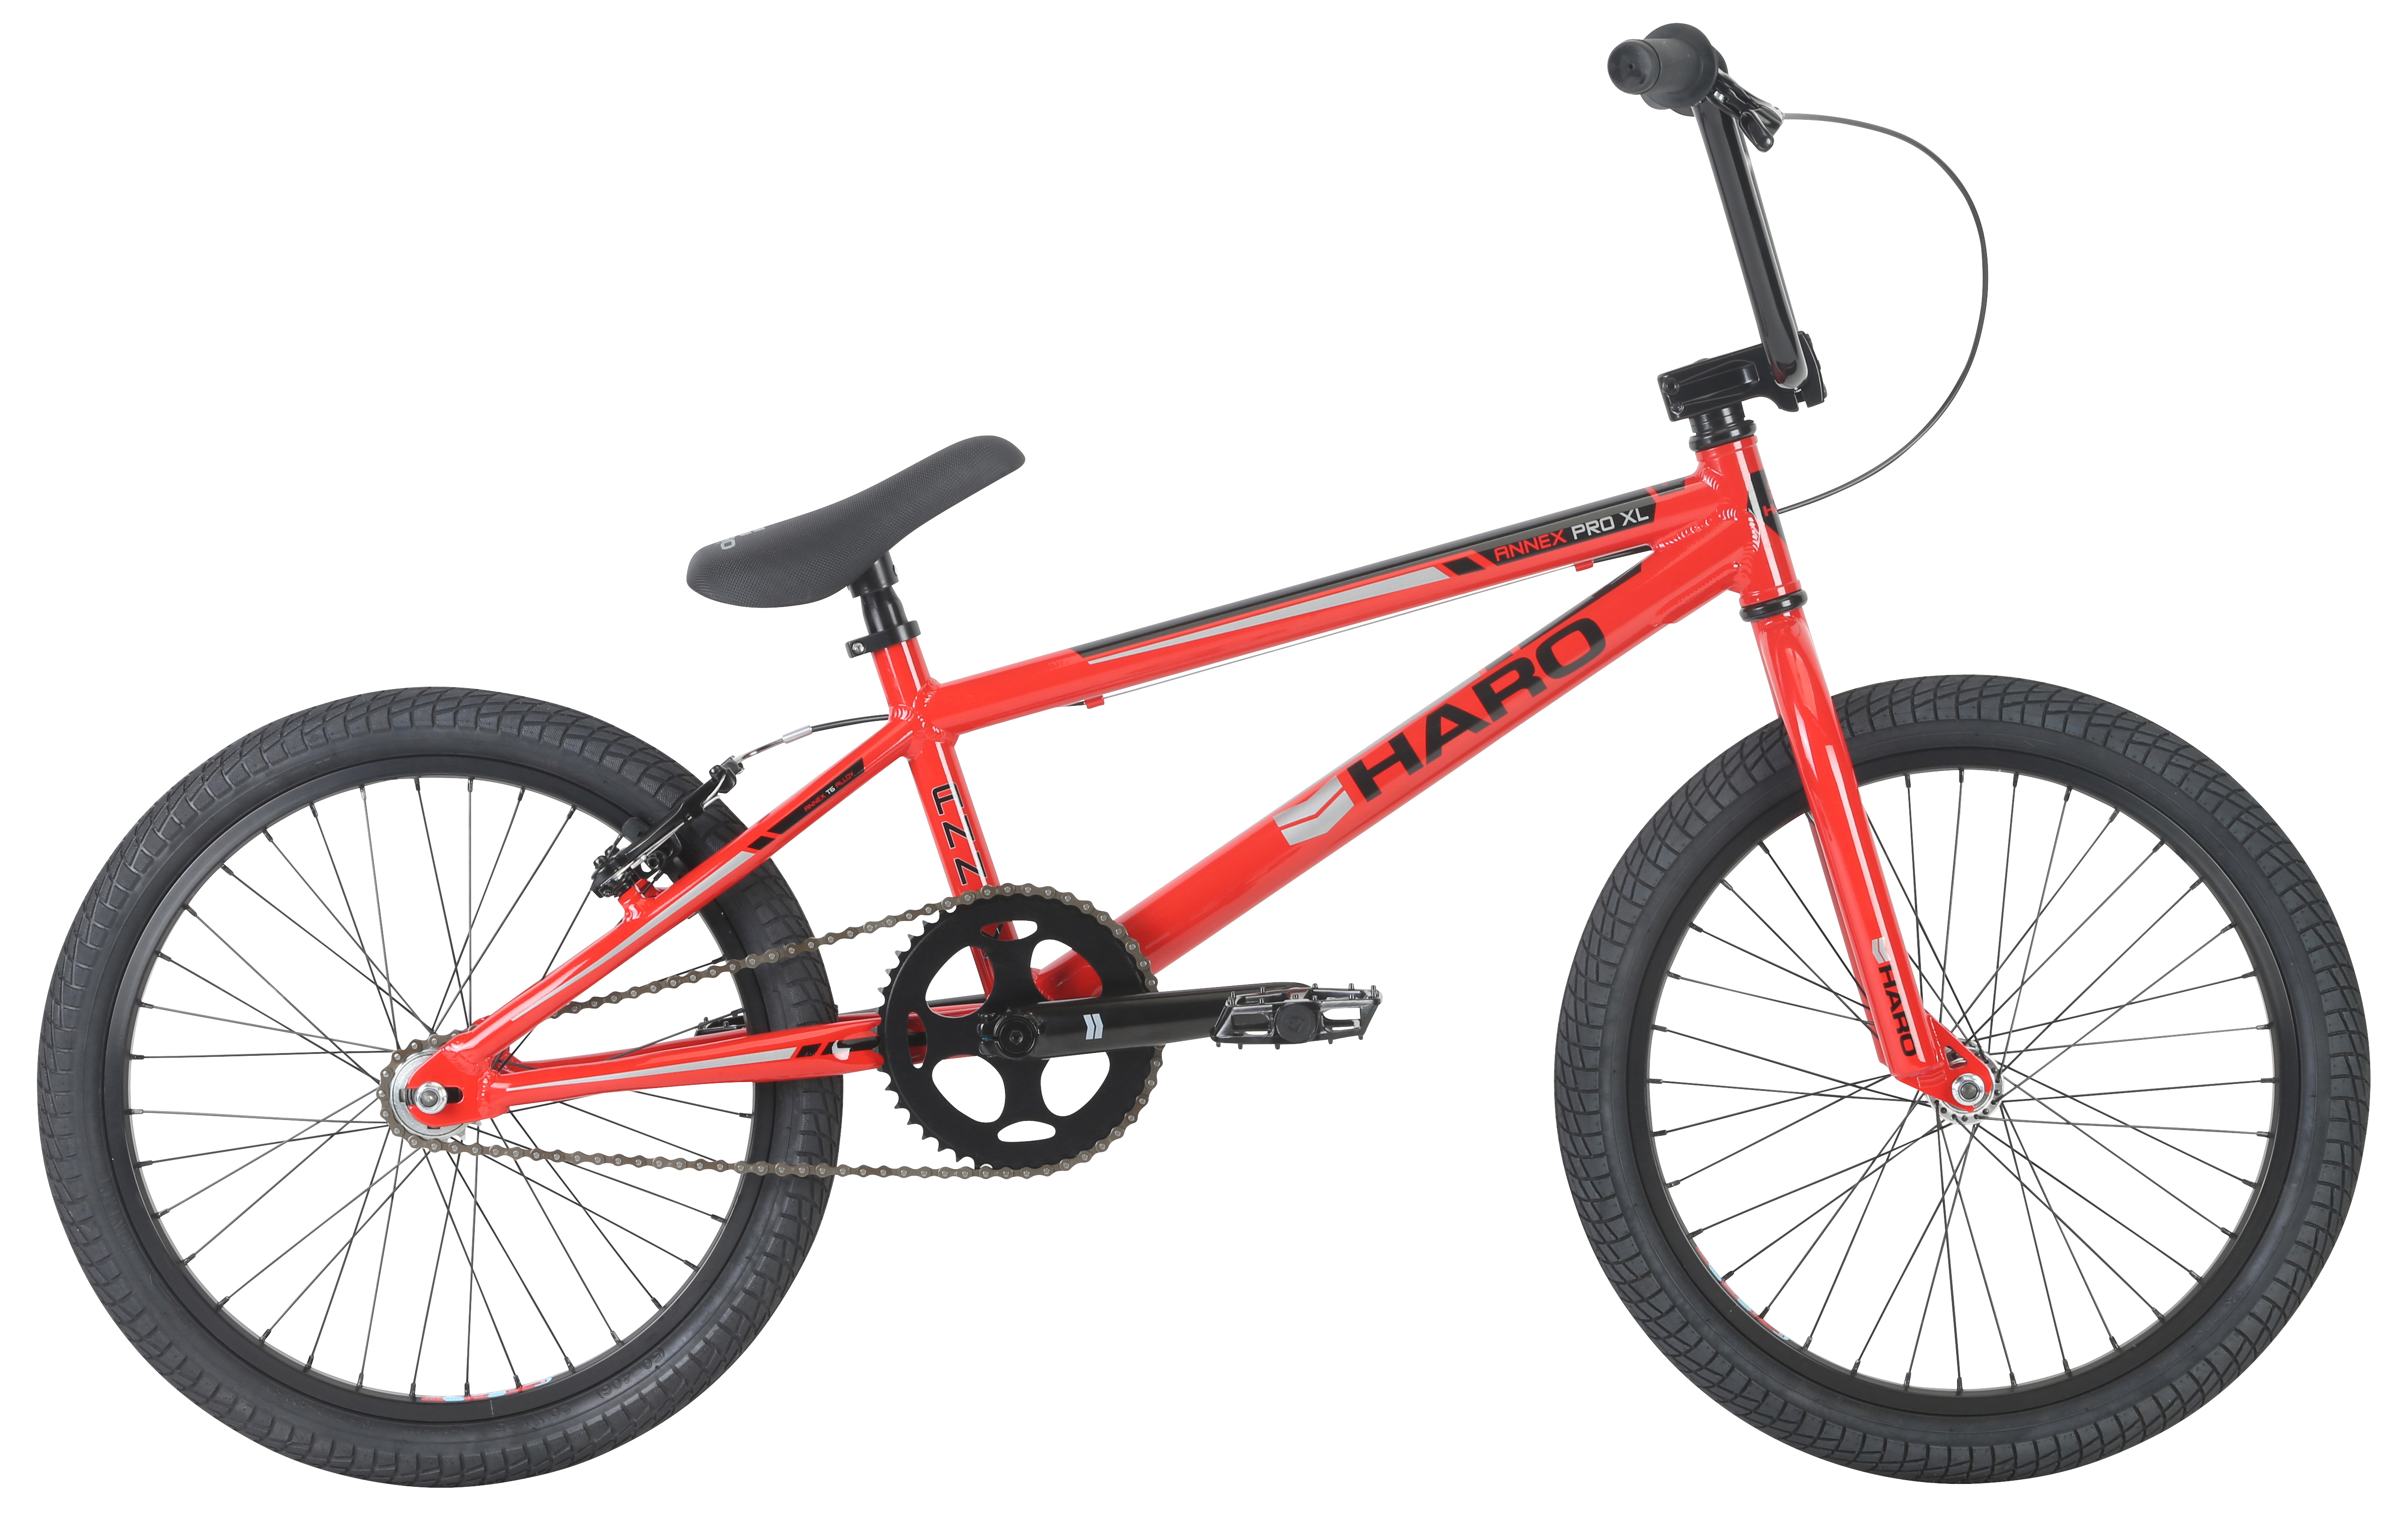  Велосипед Haro Annex Pro XL 2019